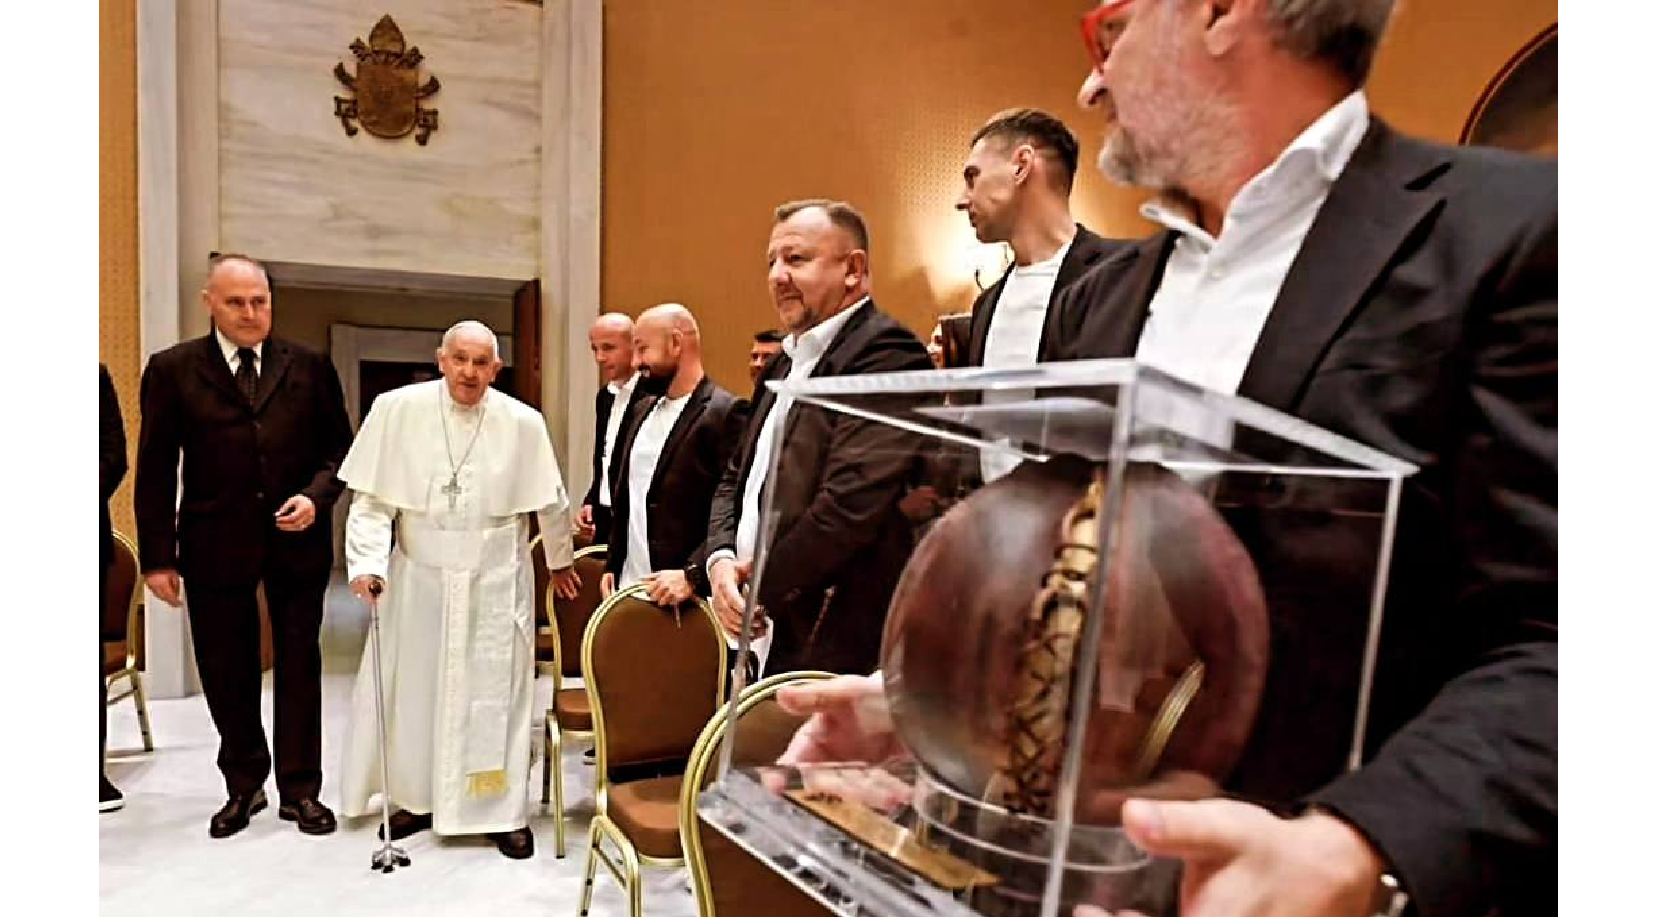 el Papa terminó agradeciendo “su visita y les deseo mucho éxito en sus actividades deportivas y sociales